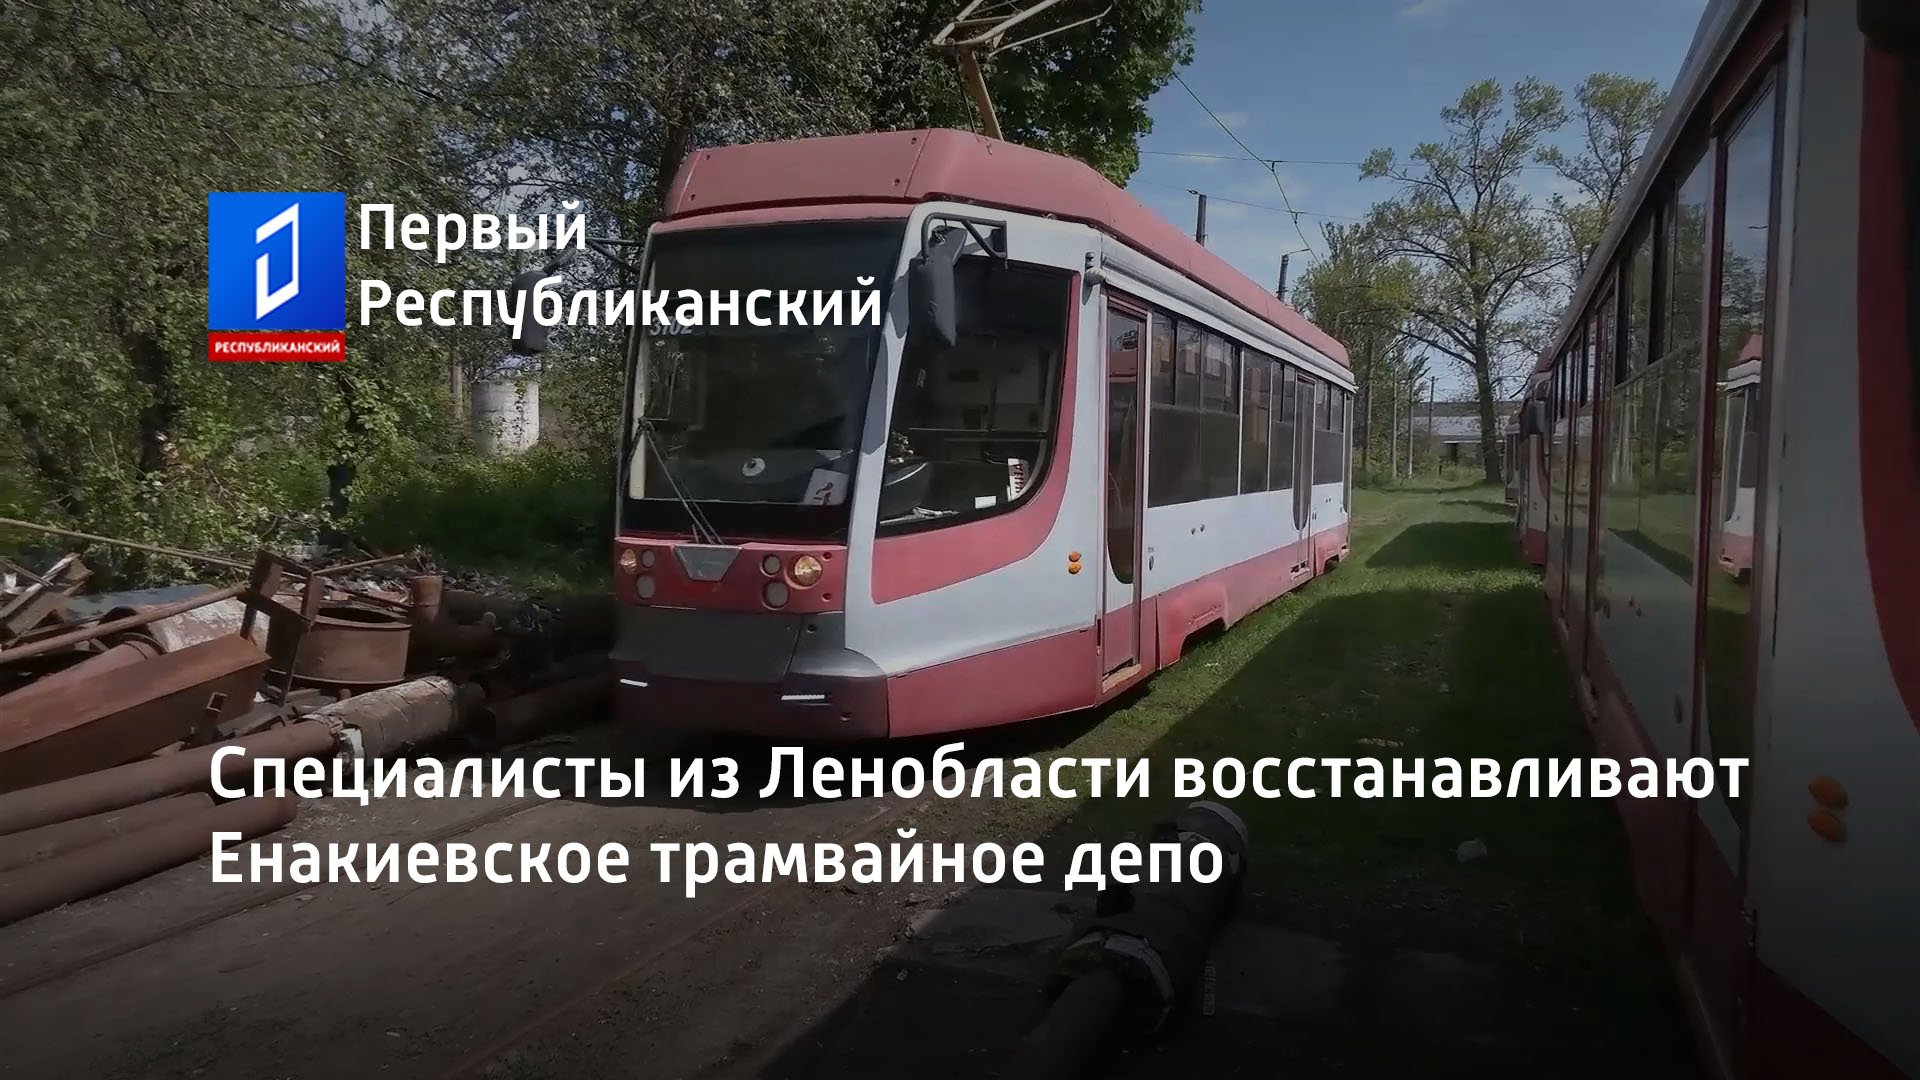 Специалисты из Ленобласти восстанавливают Енакиевское трамвайное депо